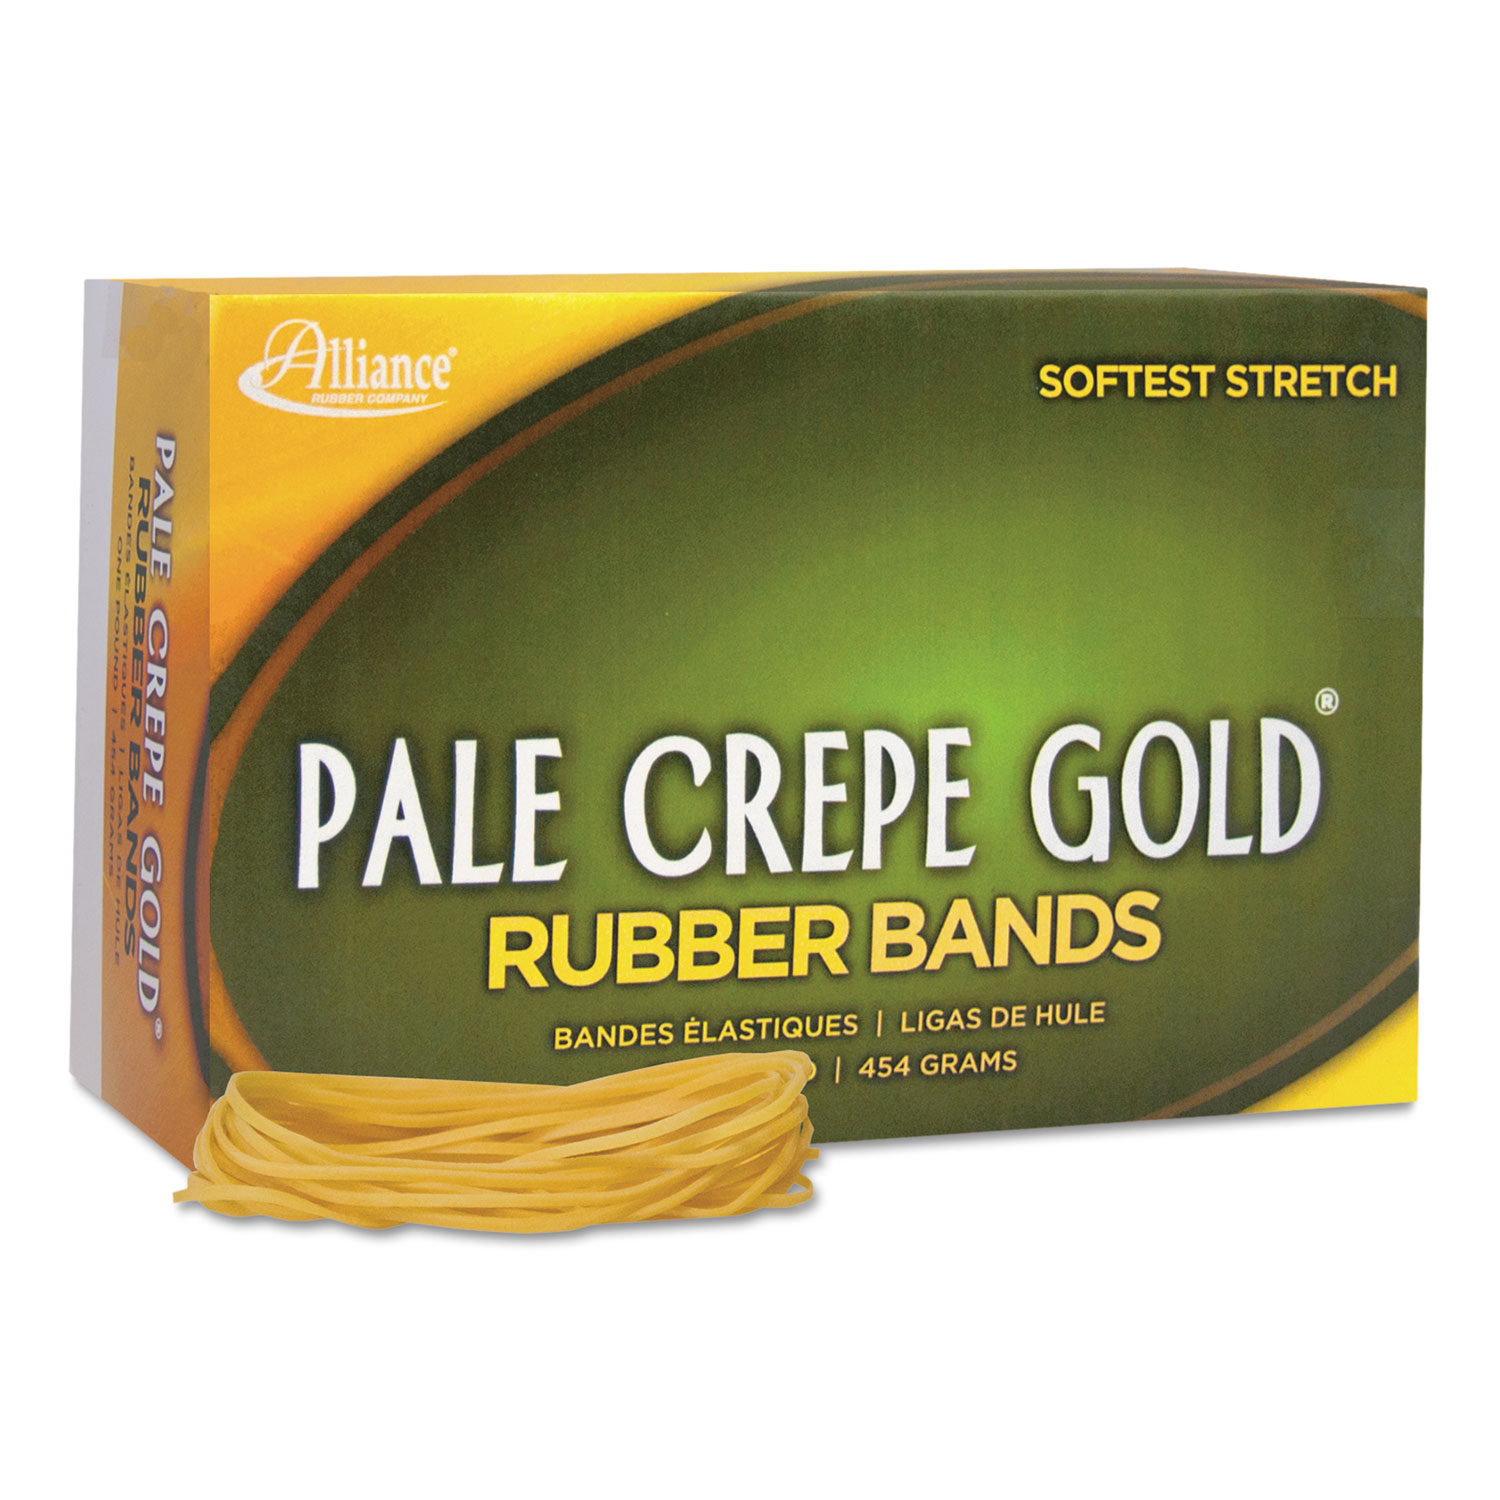 Pale Crepe Gold Rubber Bands, Sz. 19, 3-1/2 x 1/16, 1lb Box